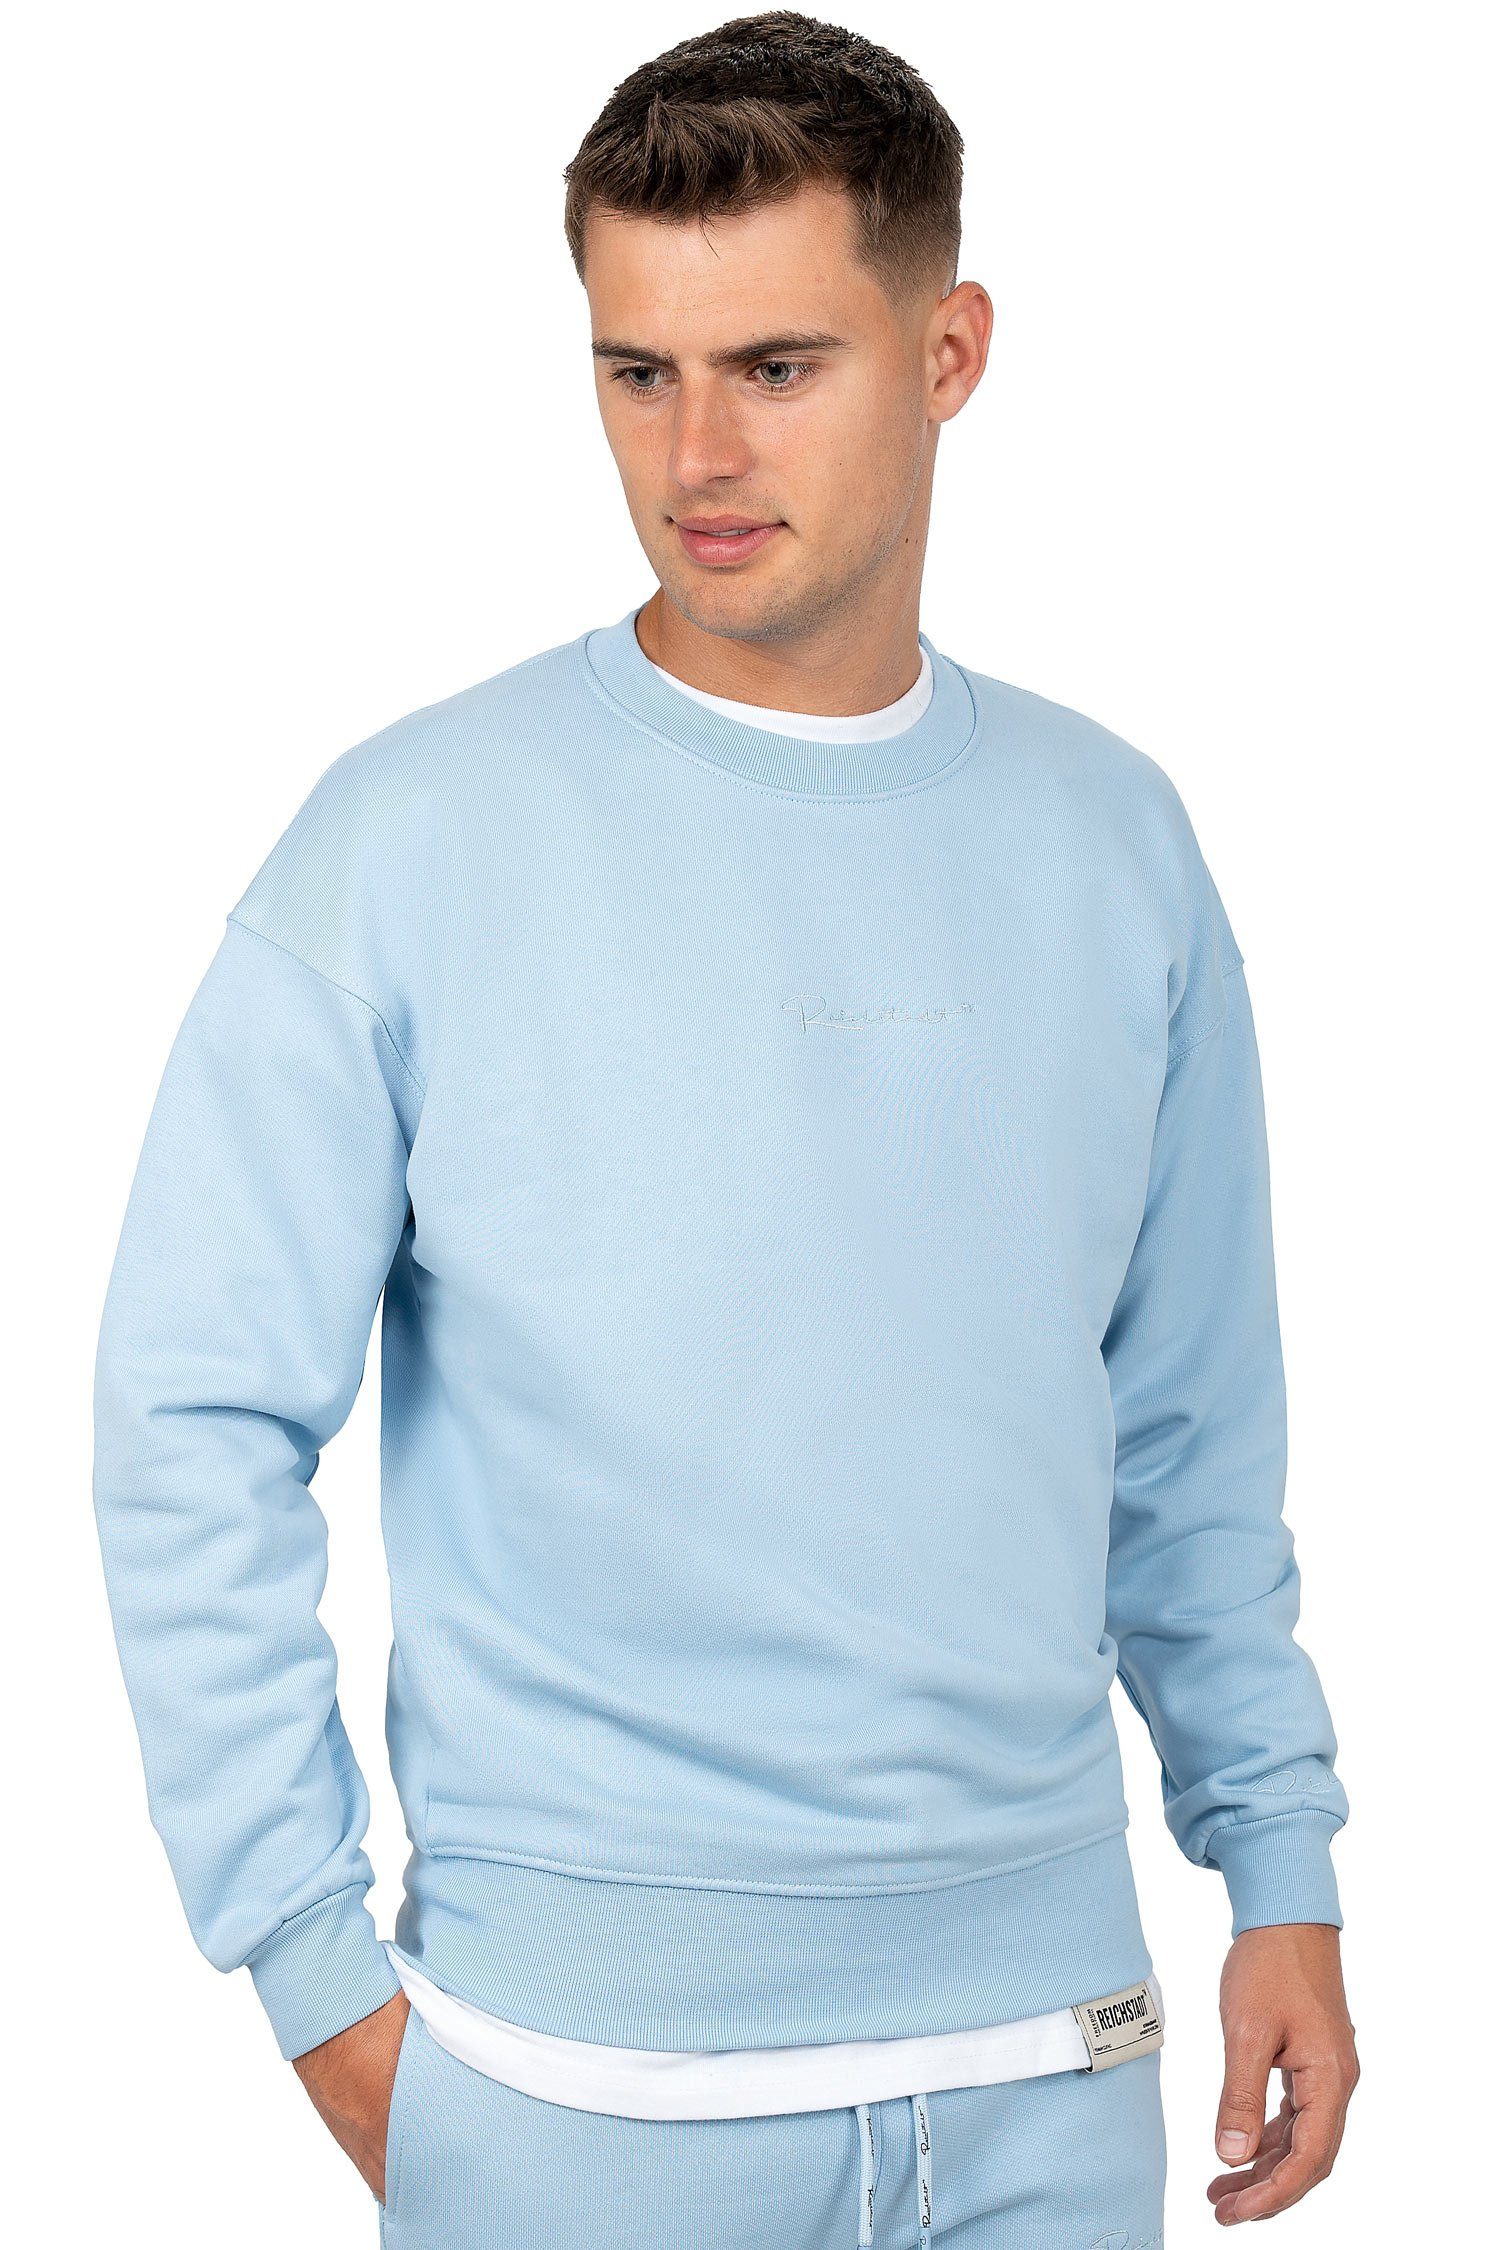 Reichstadt Hellblau (1-tlg) Casual mit Pullover Basic 23RS037 Details Sweatshirt Eleganten